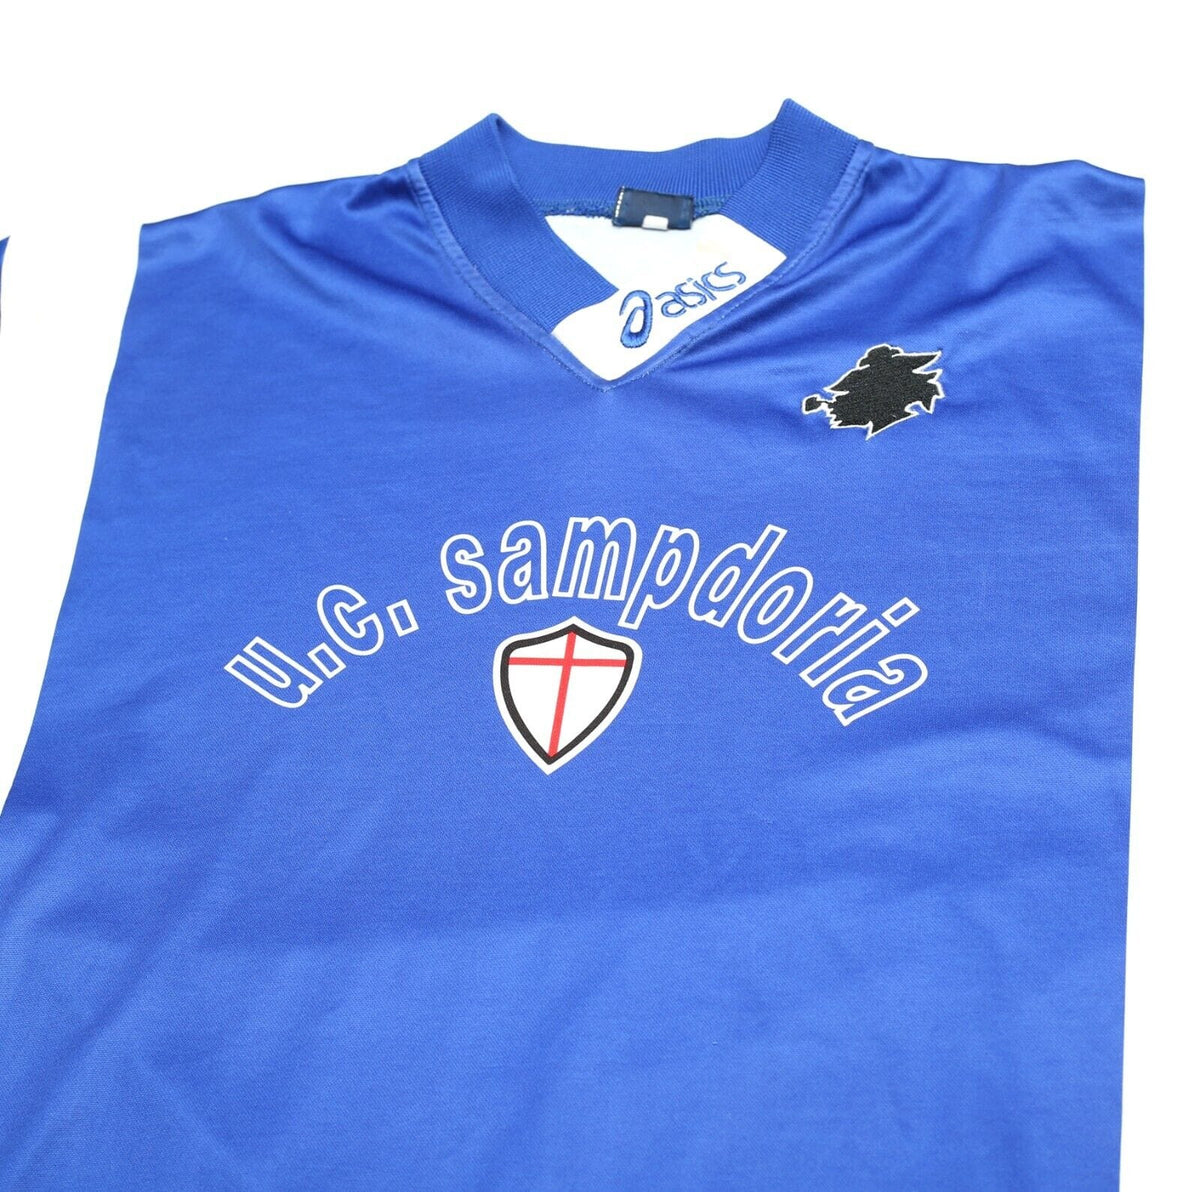 2002/03 REGGINA Vintage Asics Away Football Shirt Jersey (M)